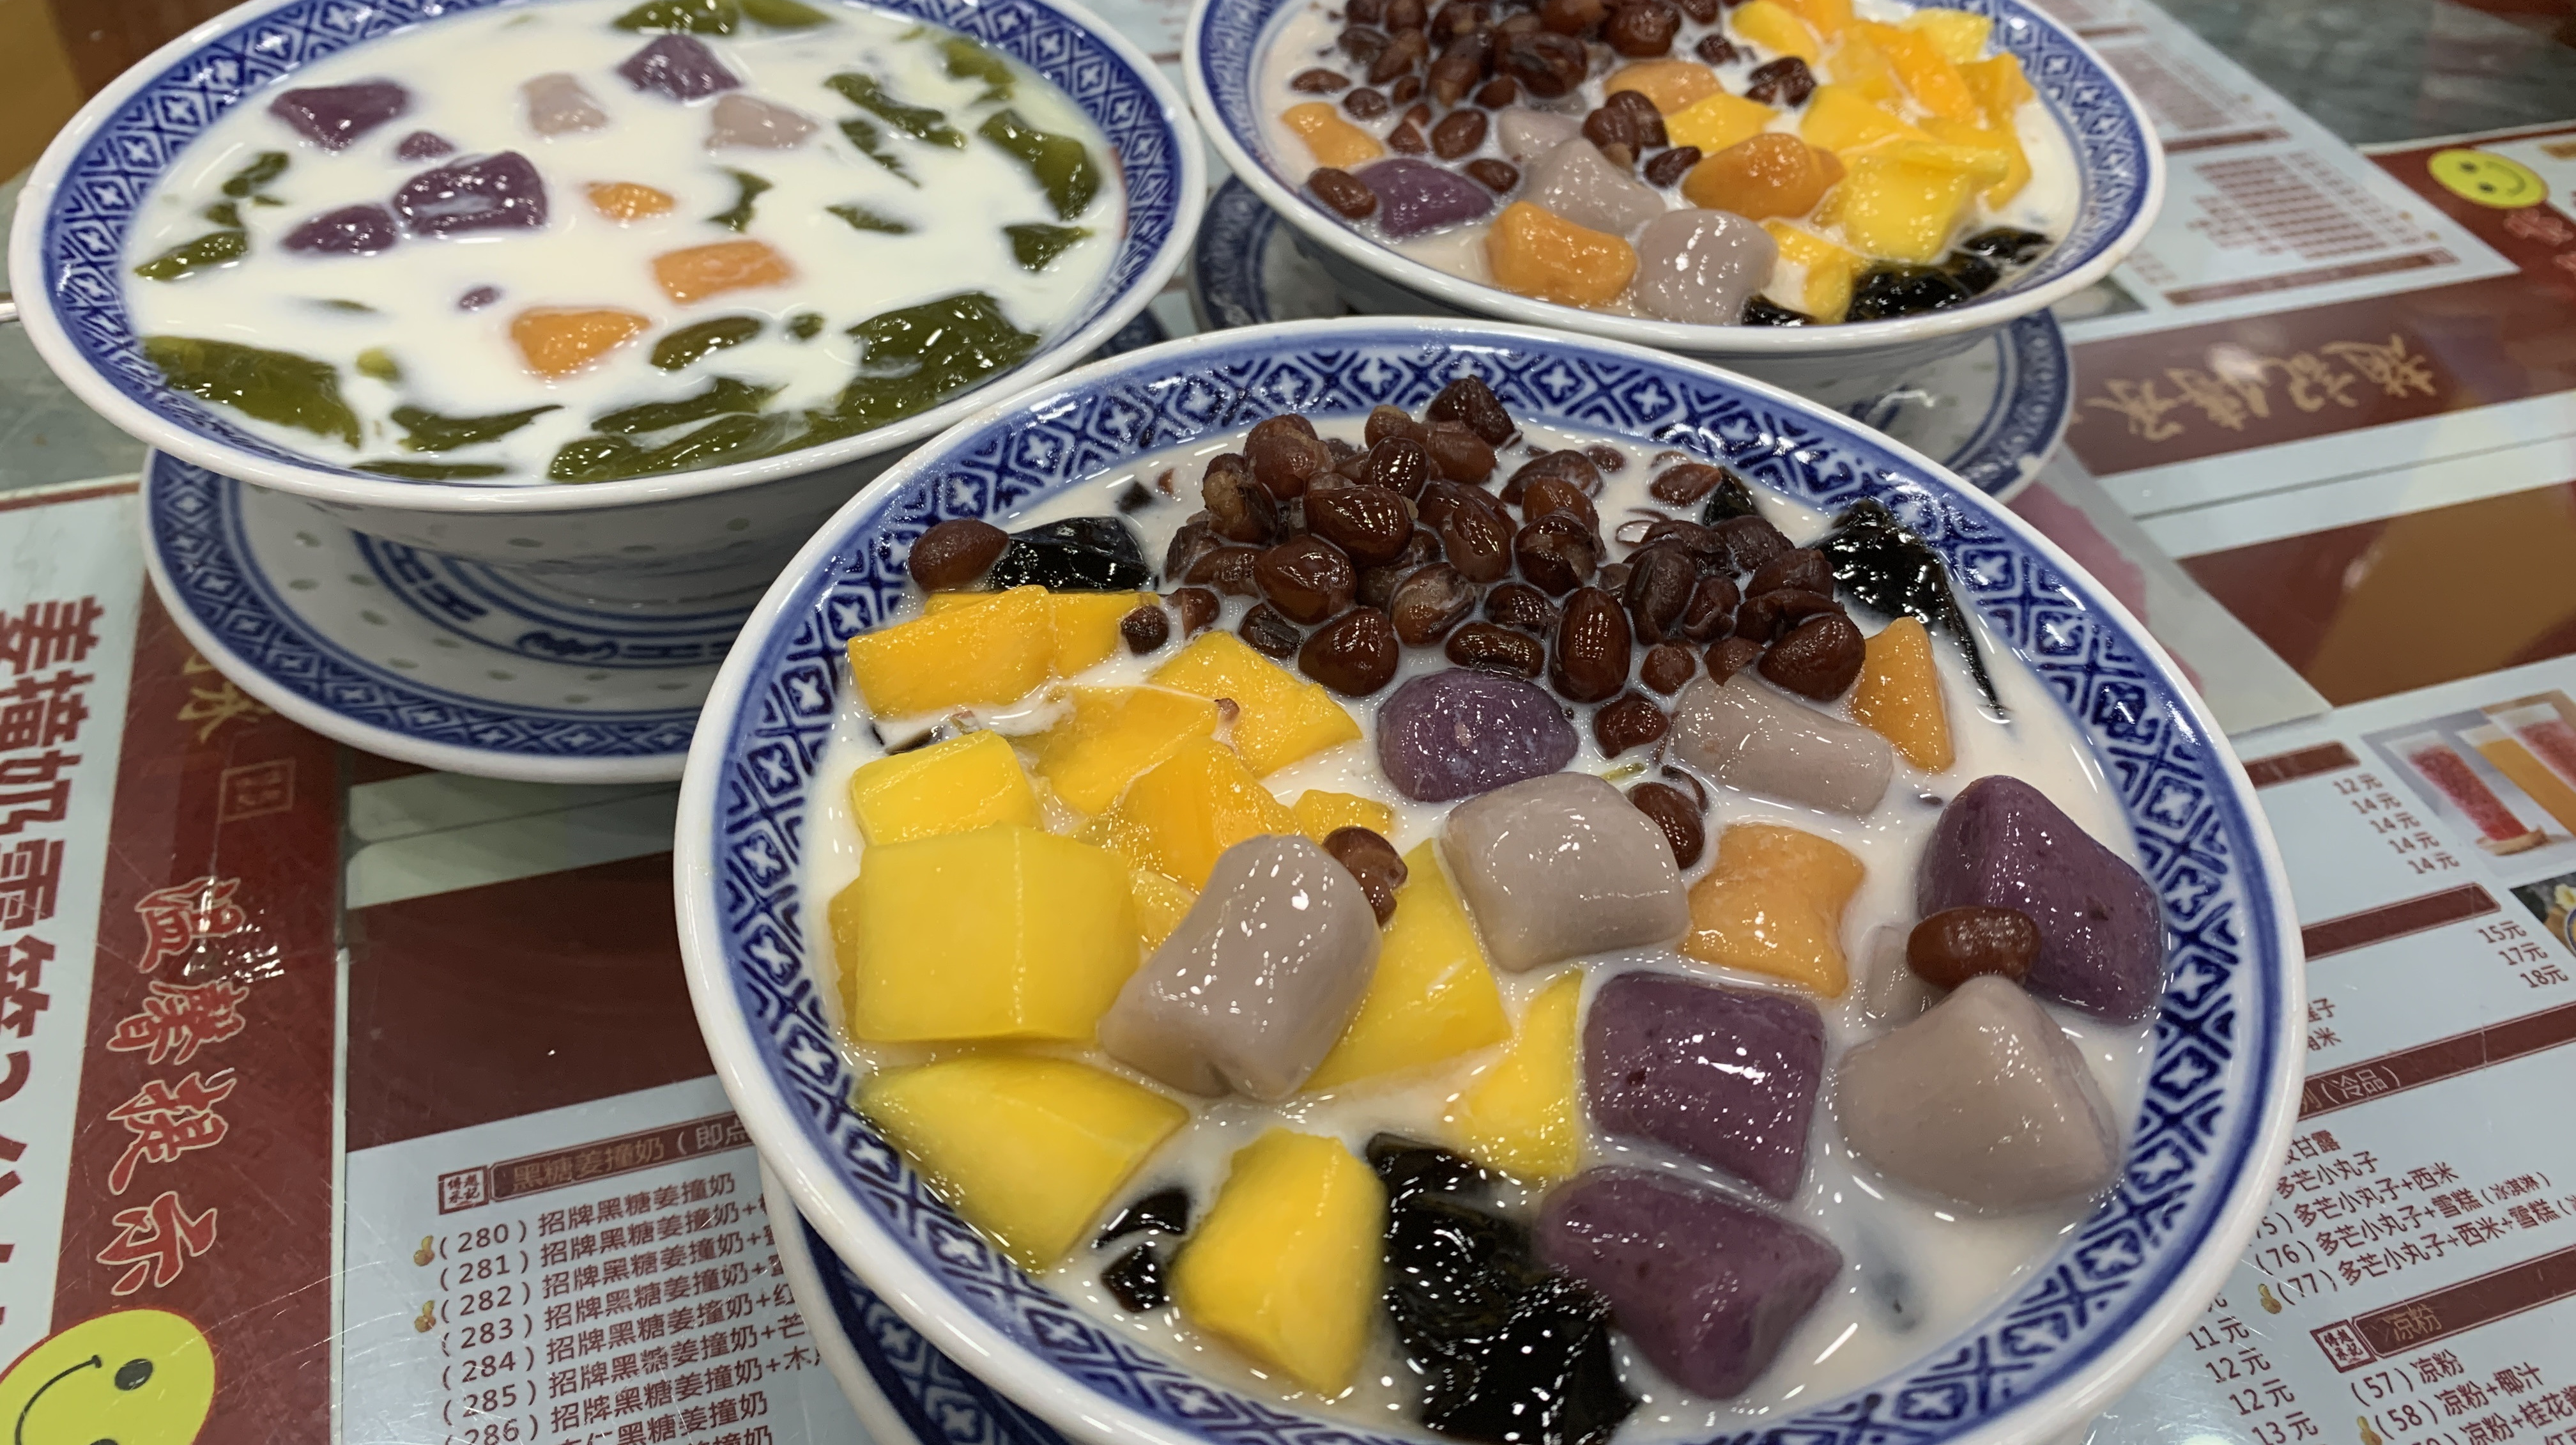 广东的甜品糖水,抹茶仙草芋圆13元一碗,传统中的新口味,好吃